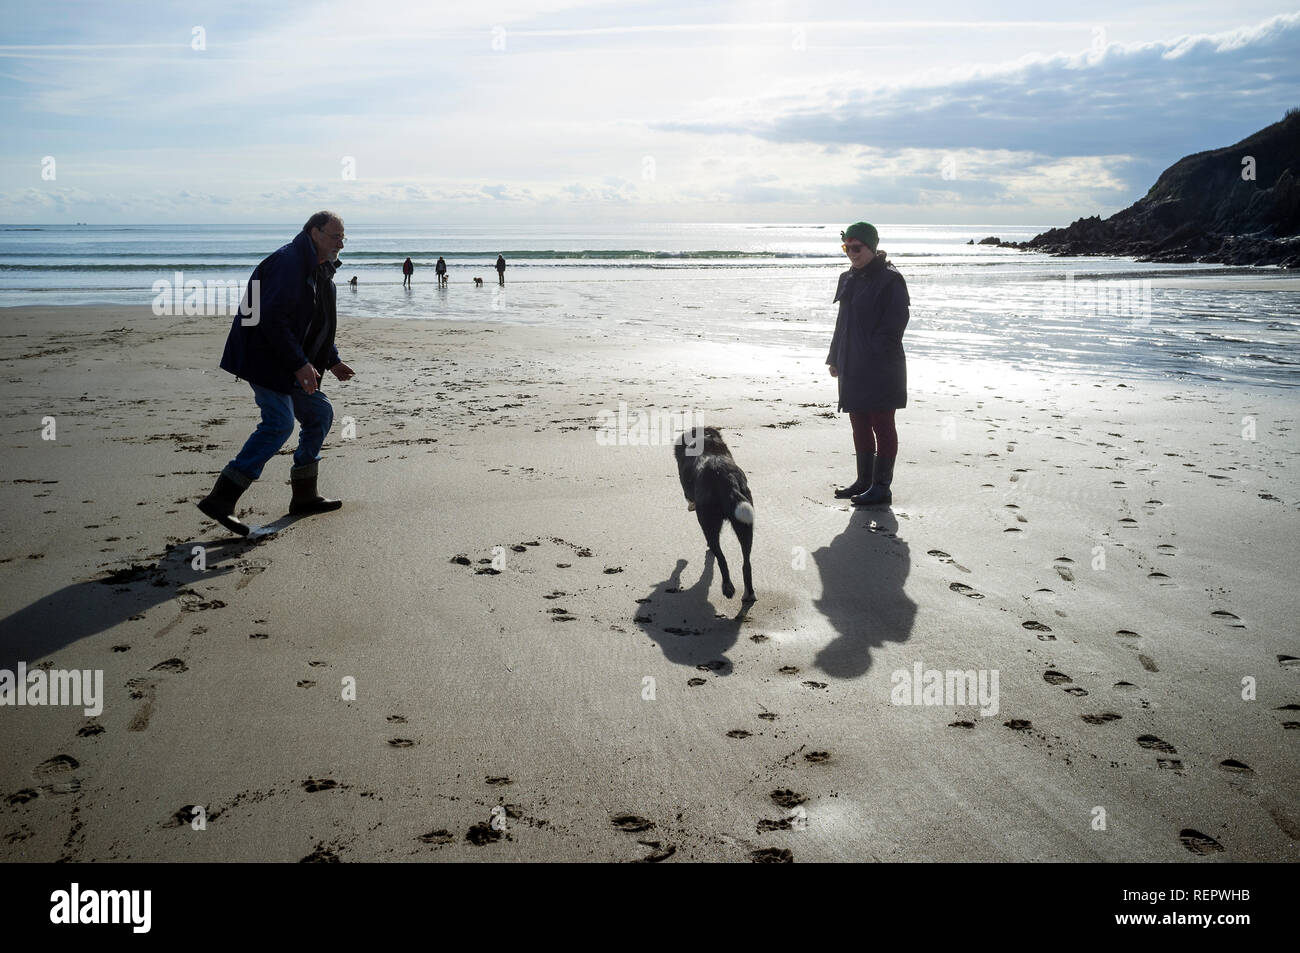 Hunde und ihre Besitzer auf dem silbrigen Sand von Wonwell Beach im Winter bei Ebbe, South Hams, Devon, Großbritannien Stockfoto